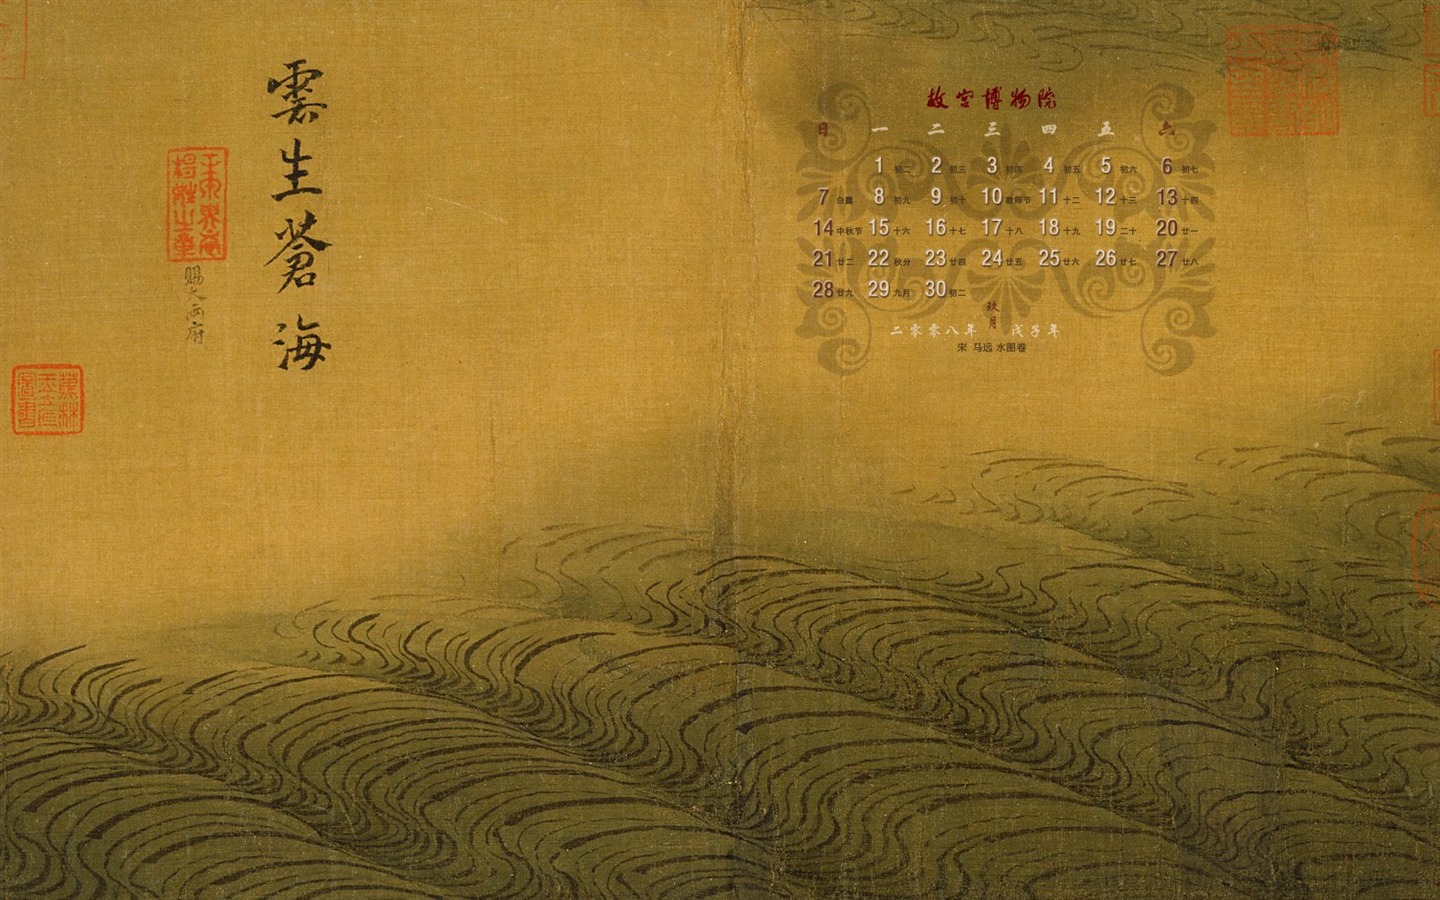 北京故宮博物院 文物展壁紙(二) #15 - 1440x900